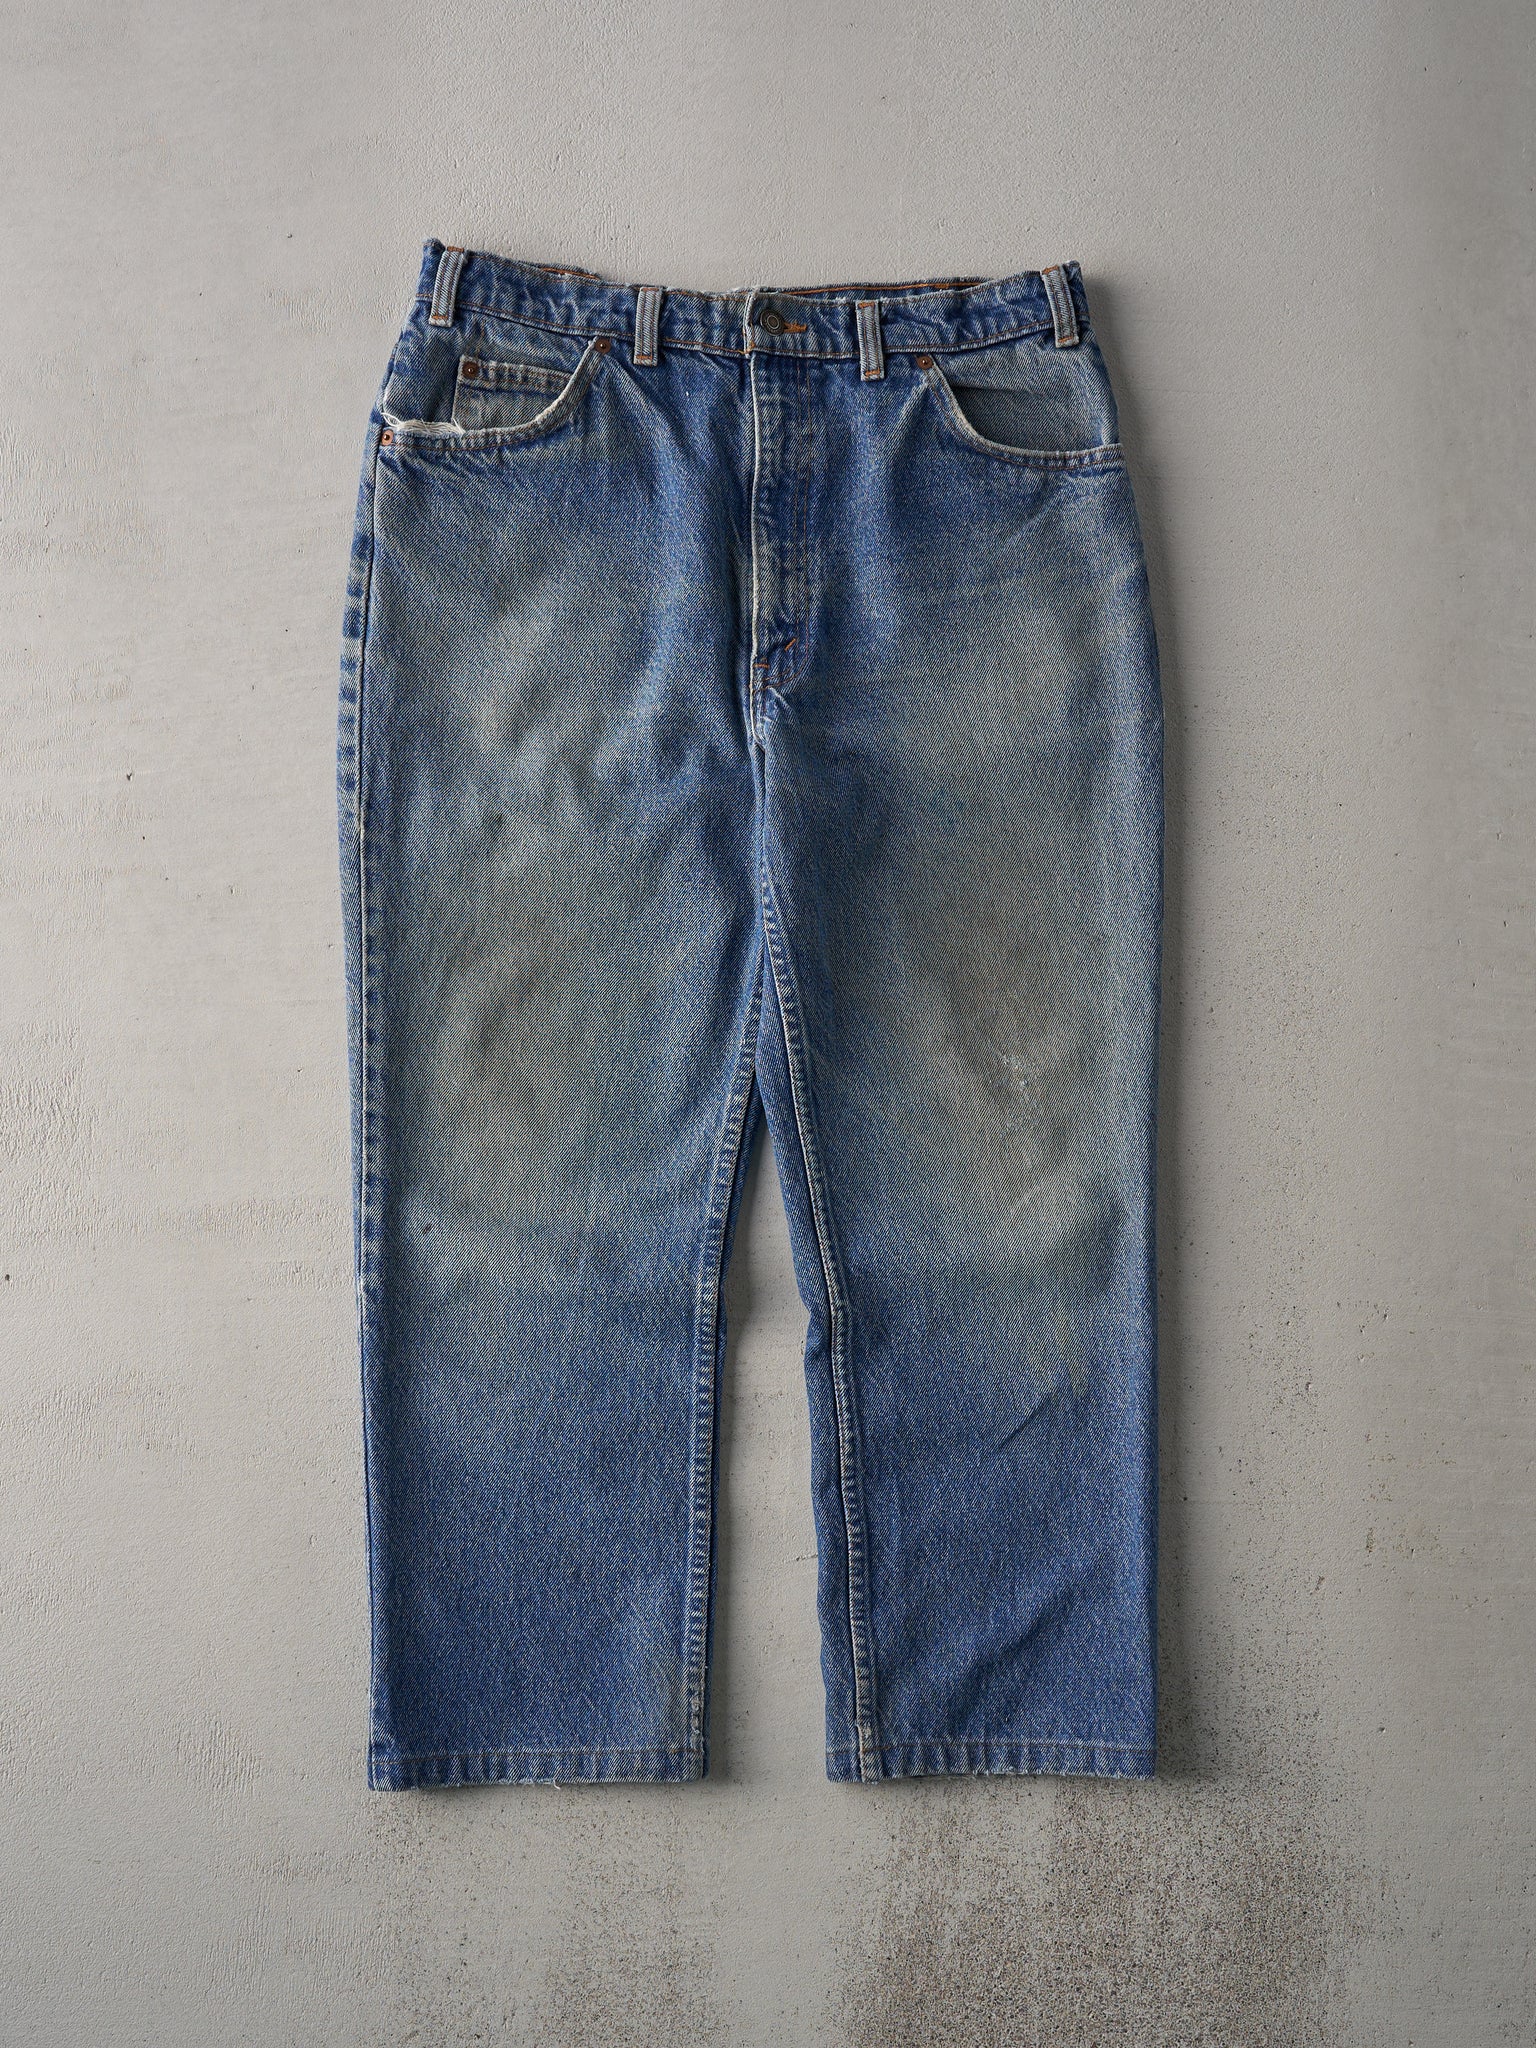 Vintage 90s Mid Wash Levi's 619 Orange Tab Denim Jeans (32x25)